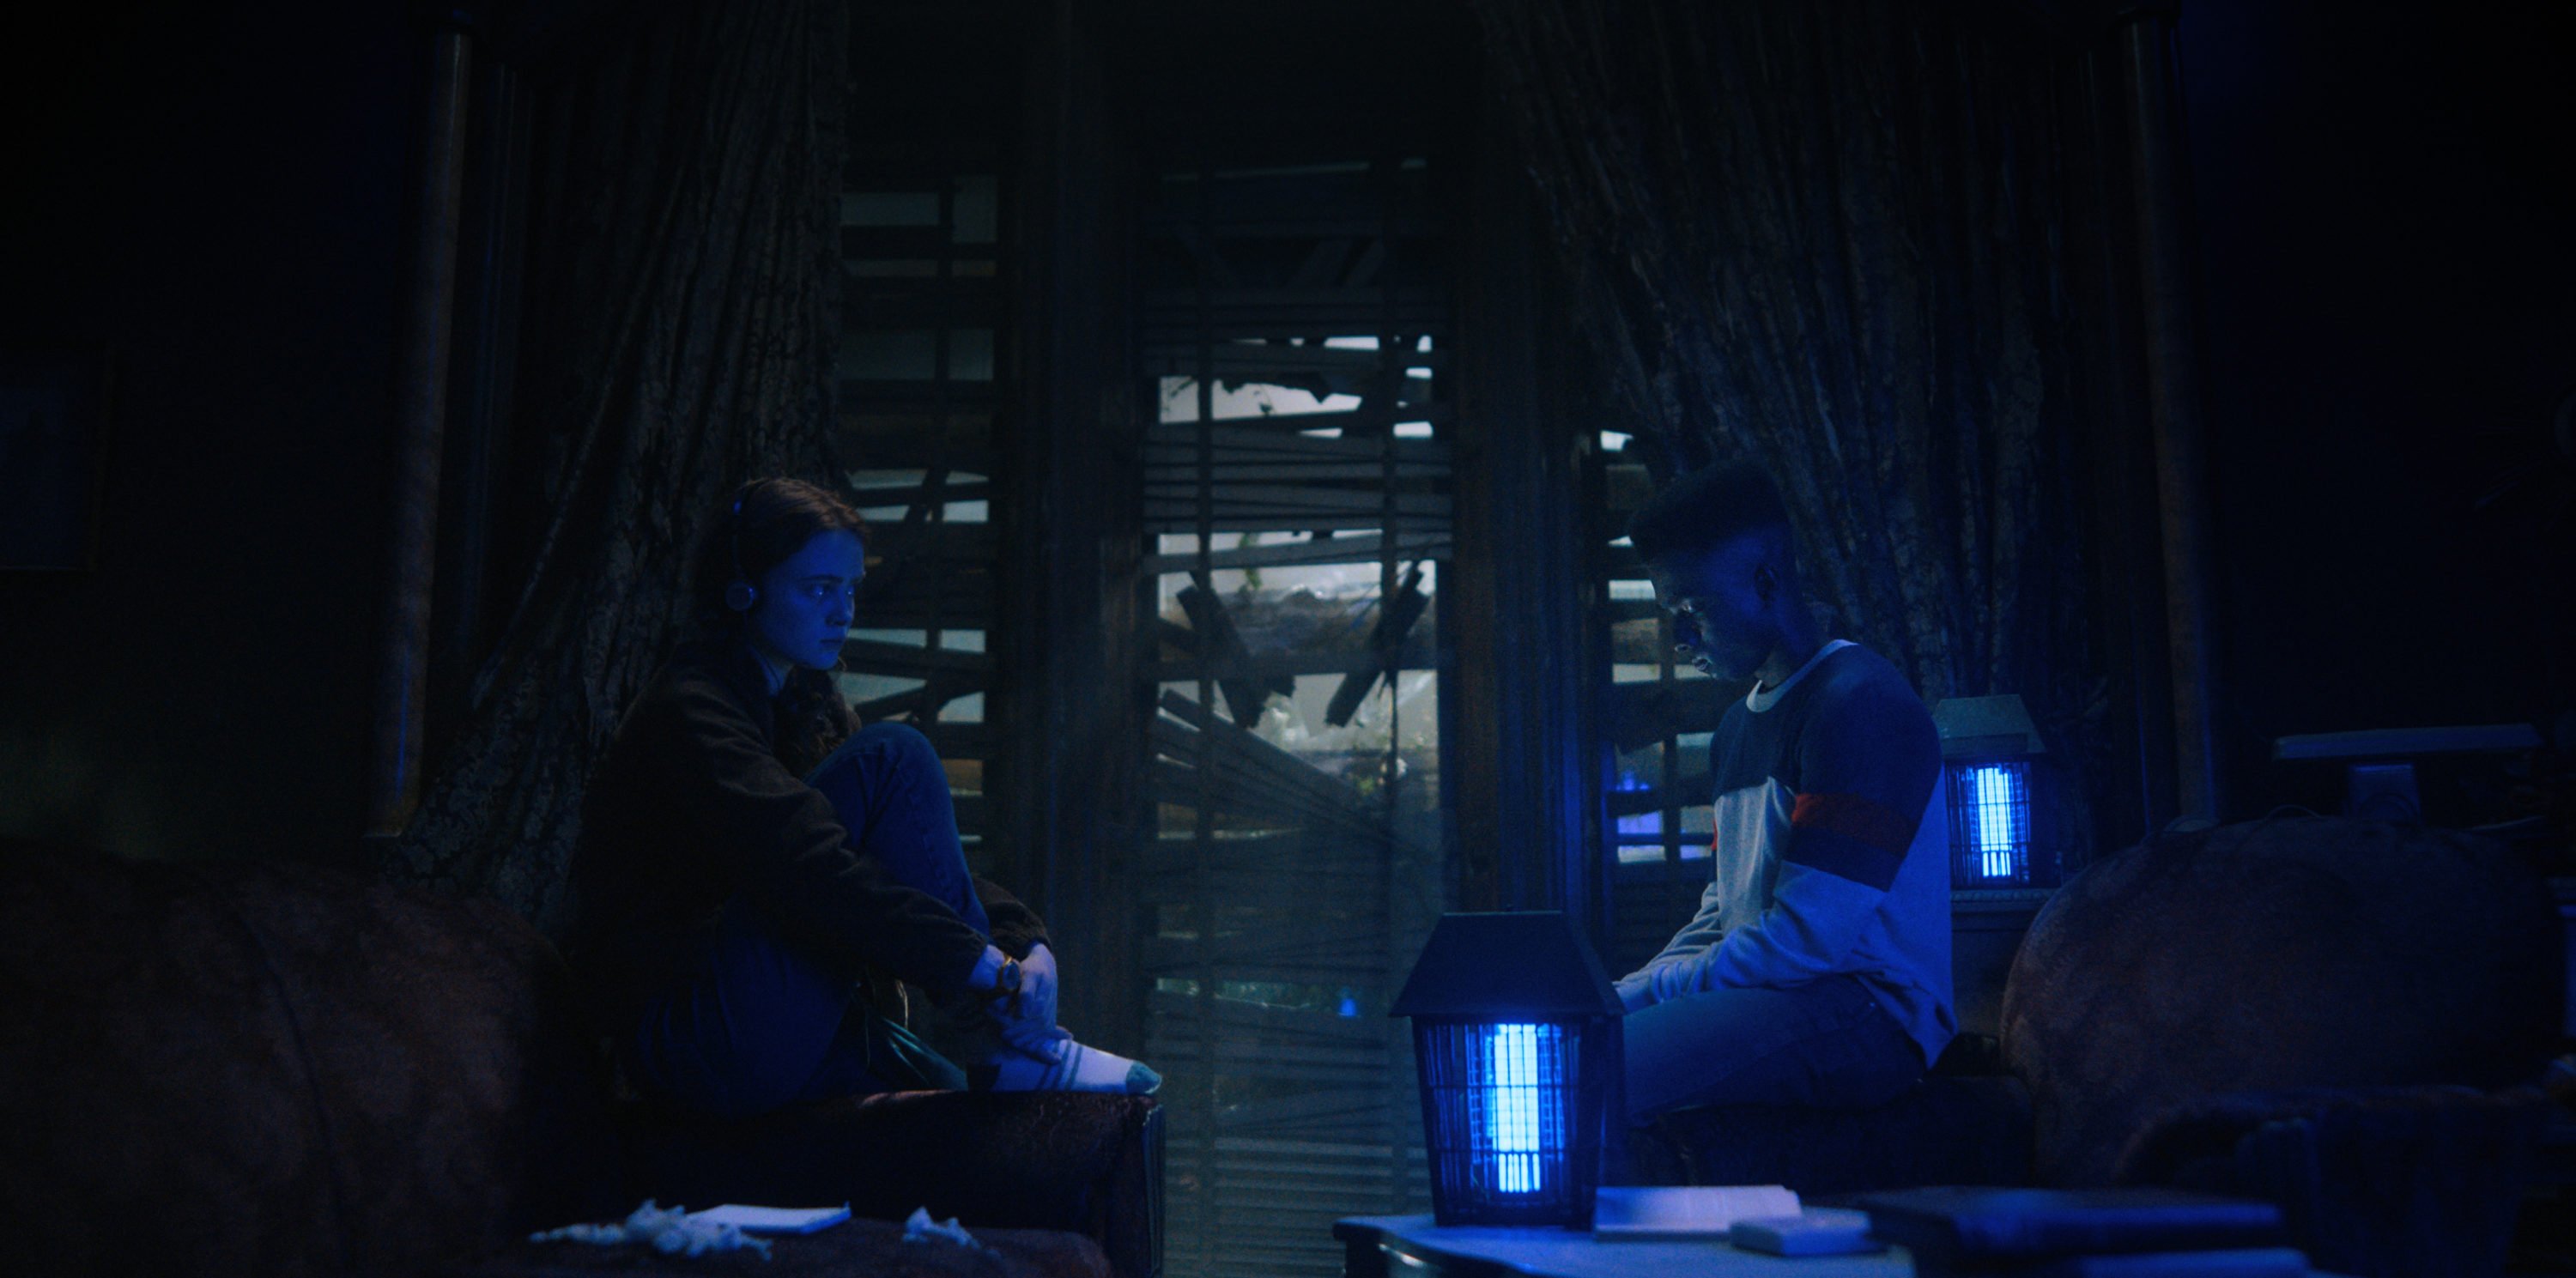 Stranger Things: trailer da parte 2 da 4ª temporada indica final